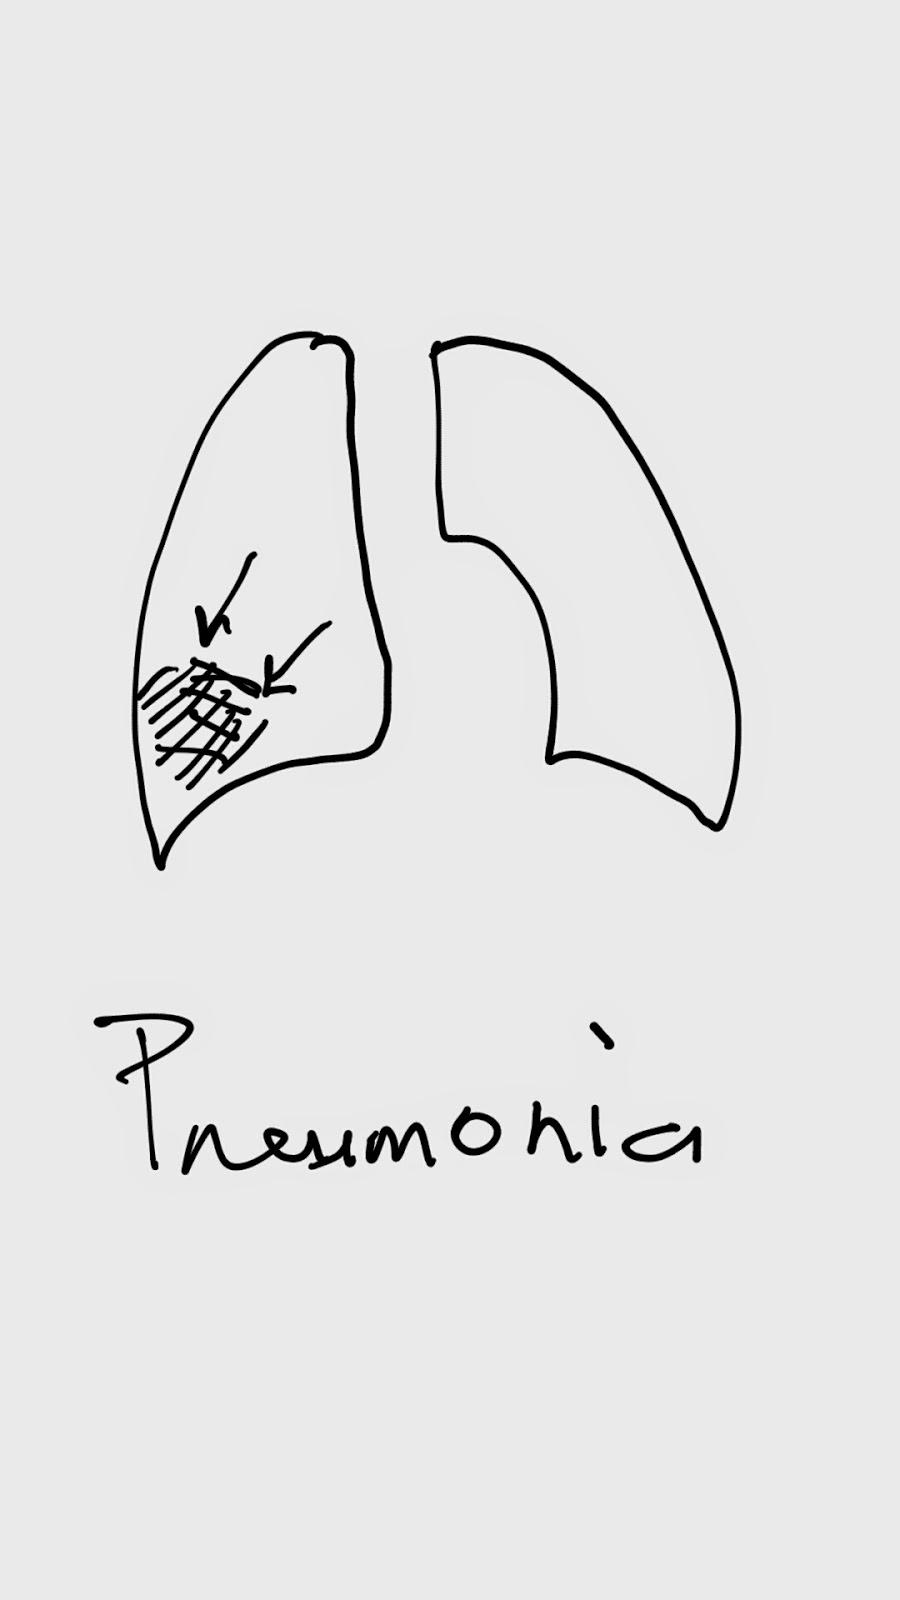 Pneumonia Pnemonia